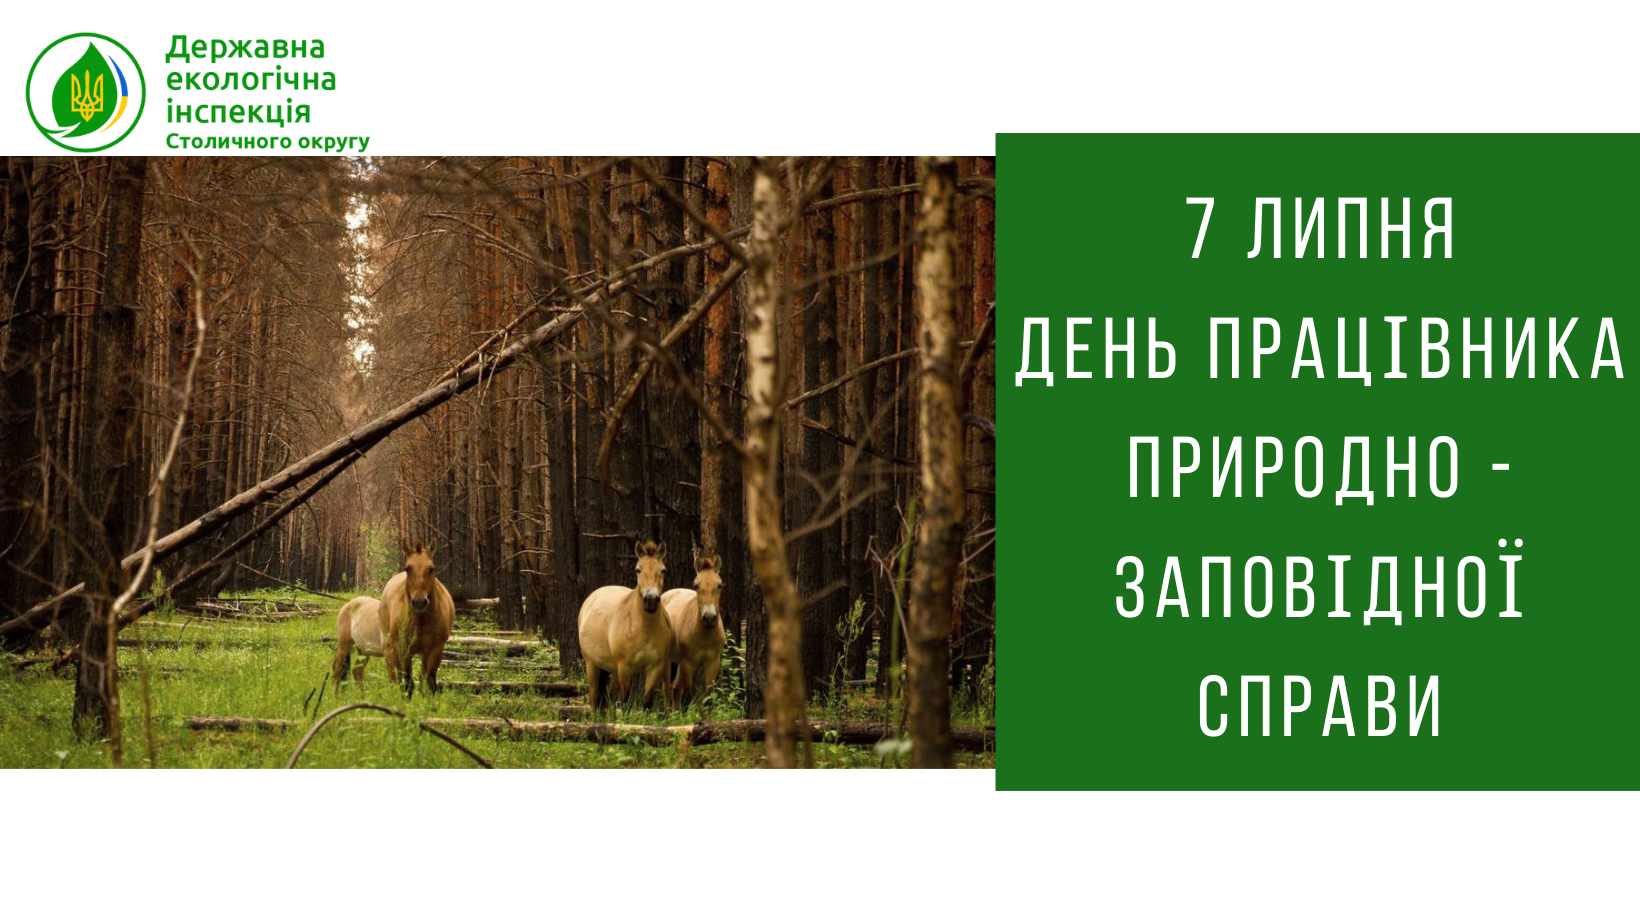 Сьогодні День працівника природно-заповідної справи України.